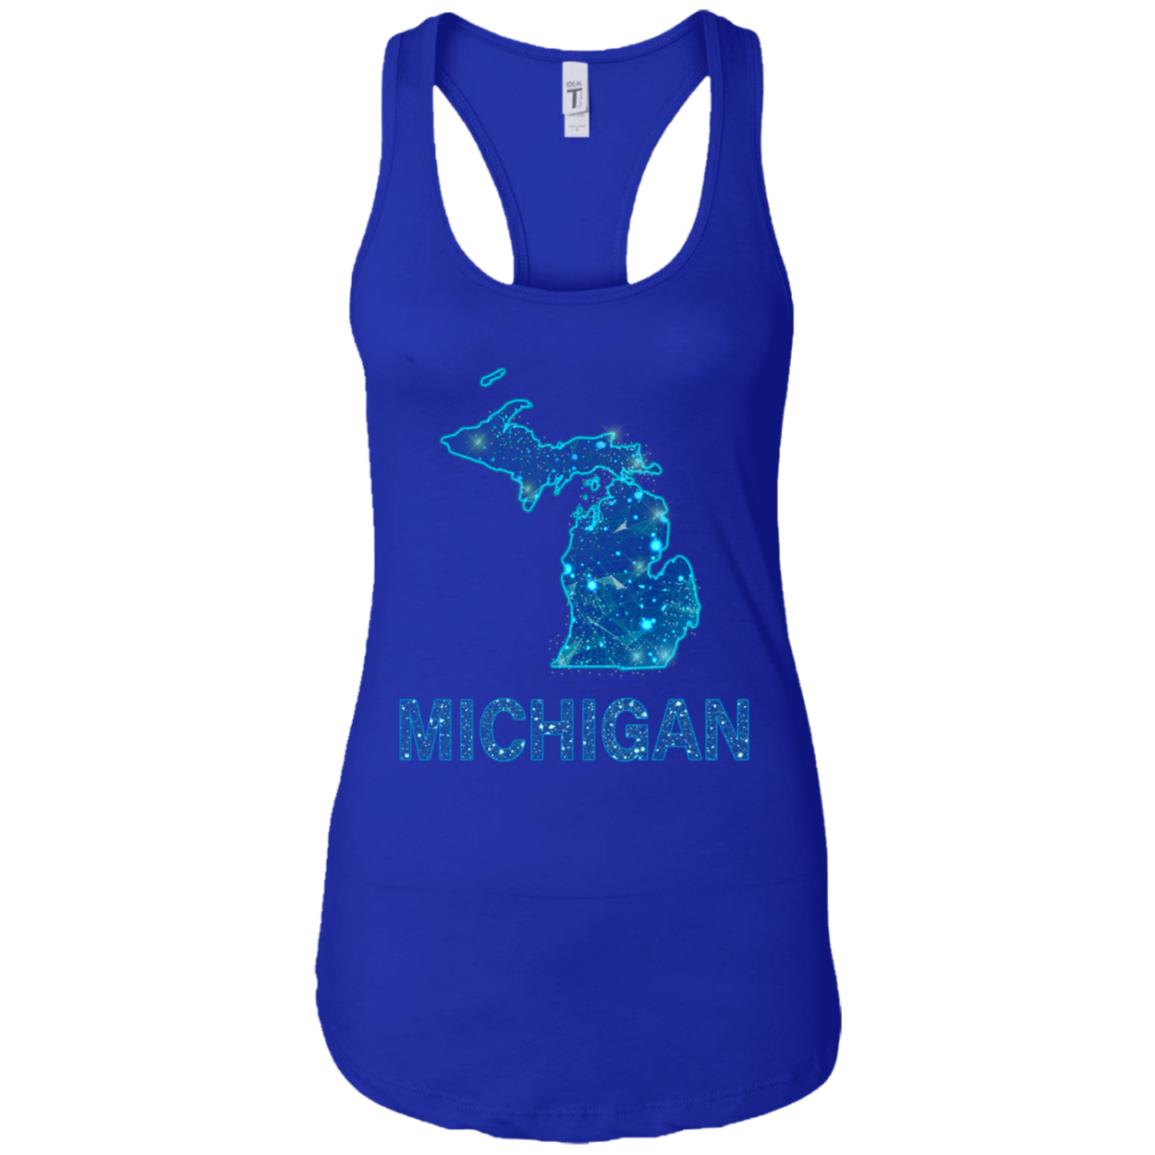 Michigan Map Line Dots T-Shirt - T-shirt Teezalo